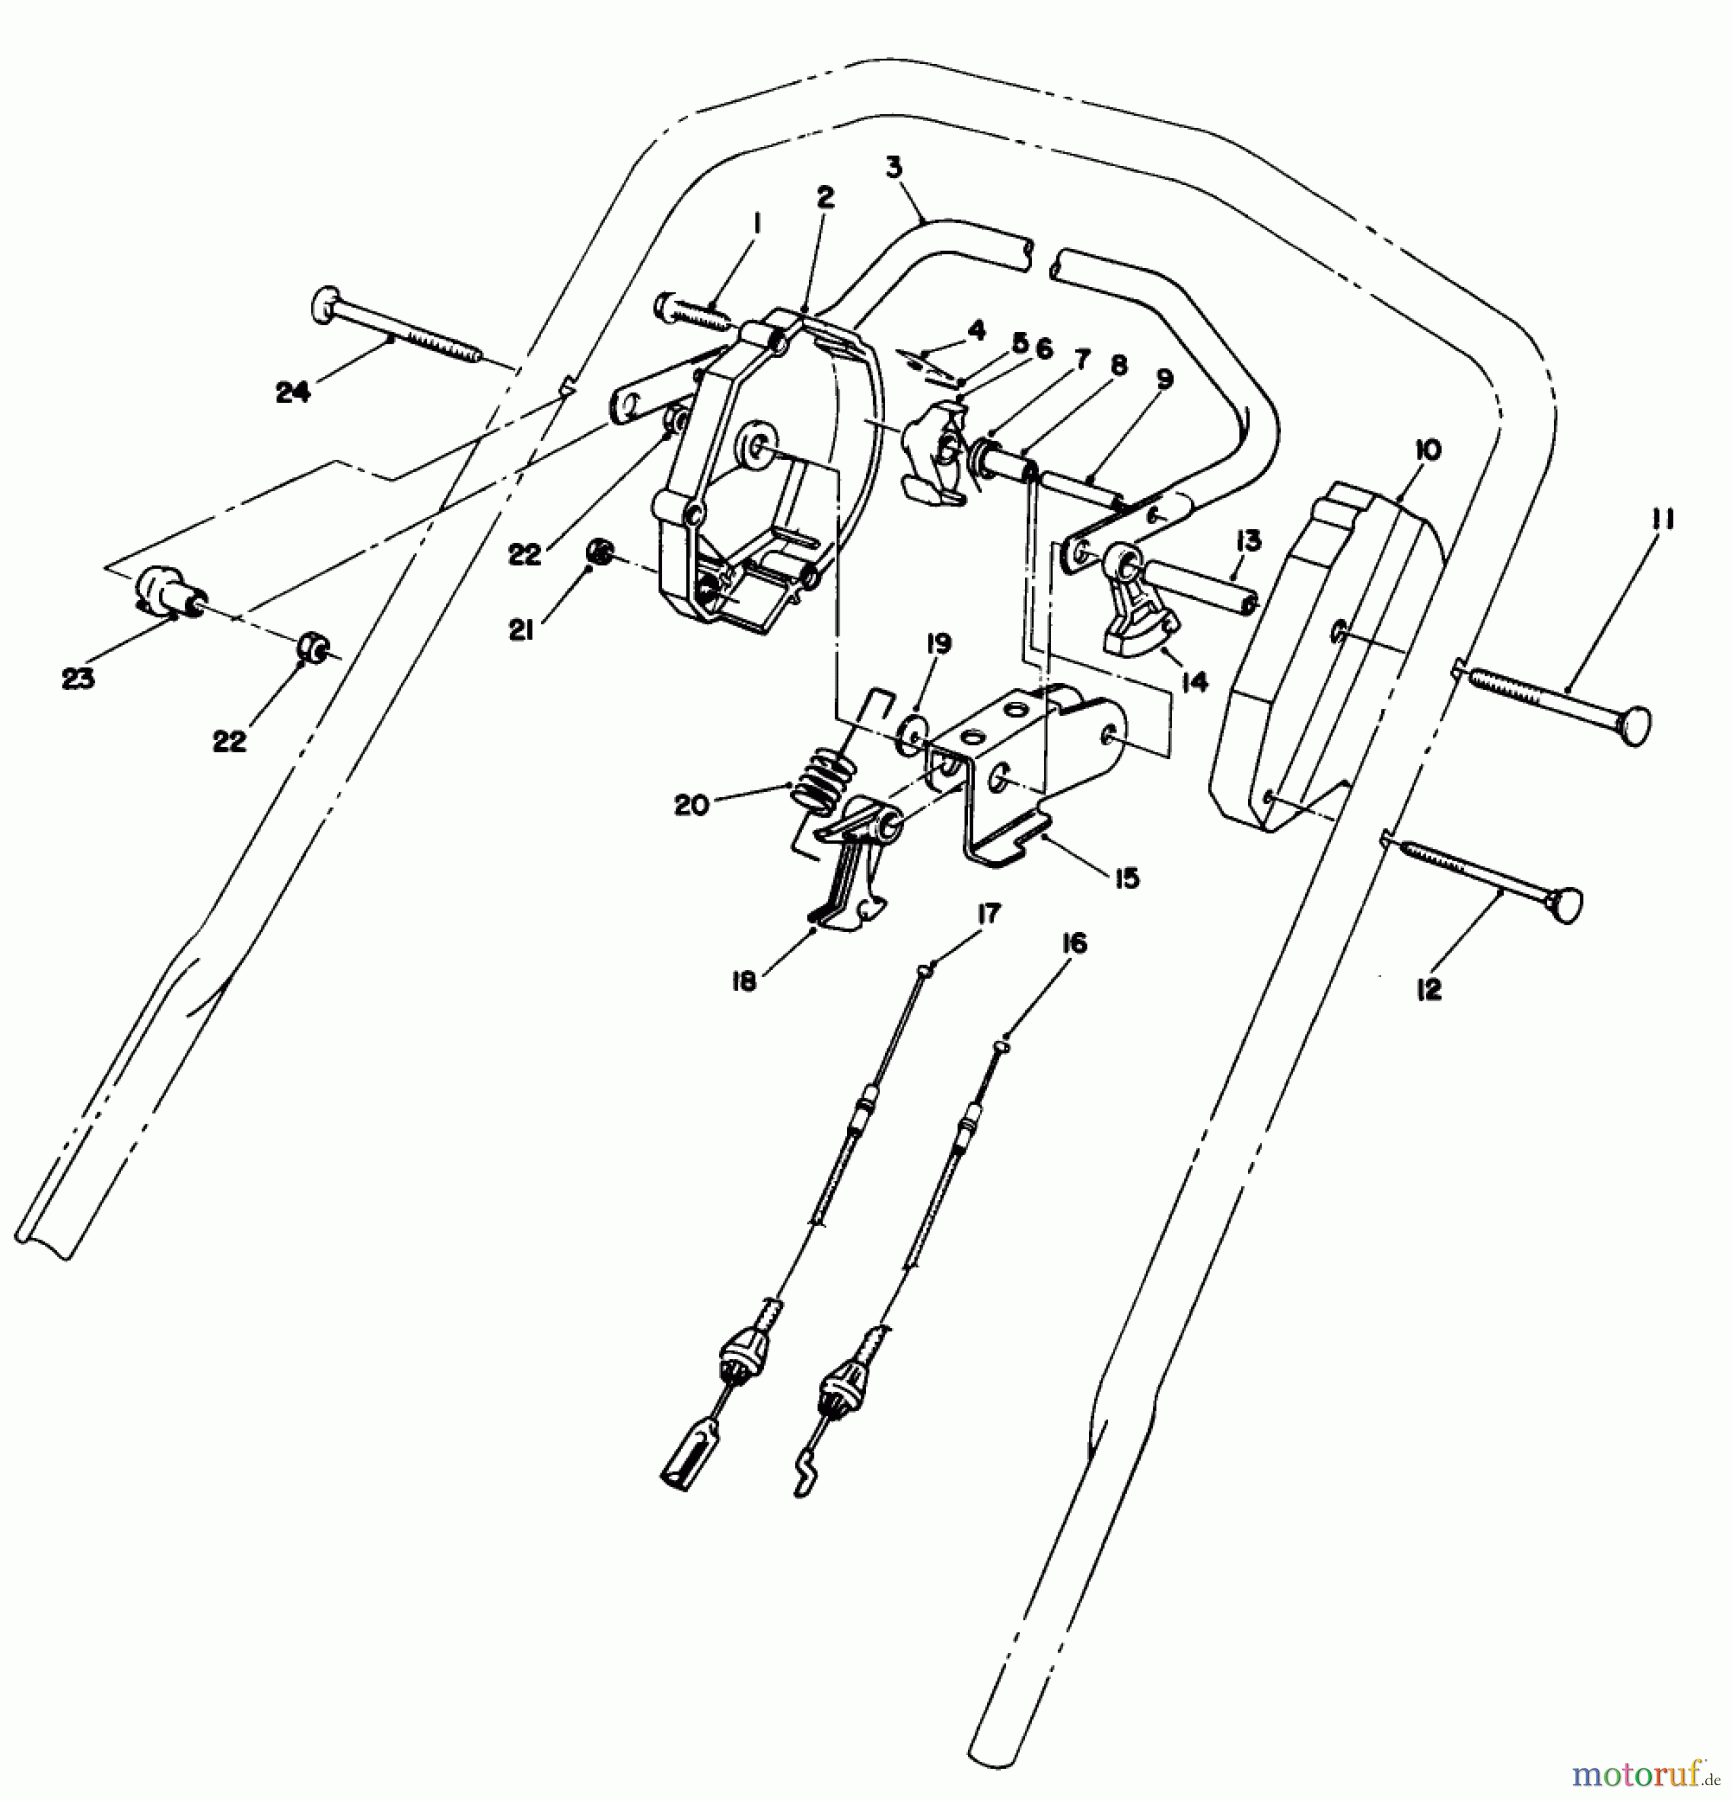  Toro Neu Mowers, Walk-Behind Seite 2 26622CS - Toro Lawnmower, 1989 (9000001-9999999) TRACTION CONTROL ASSEMBLY